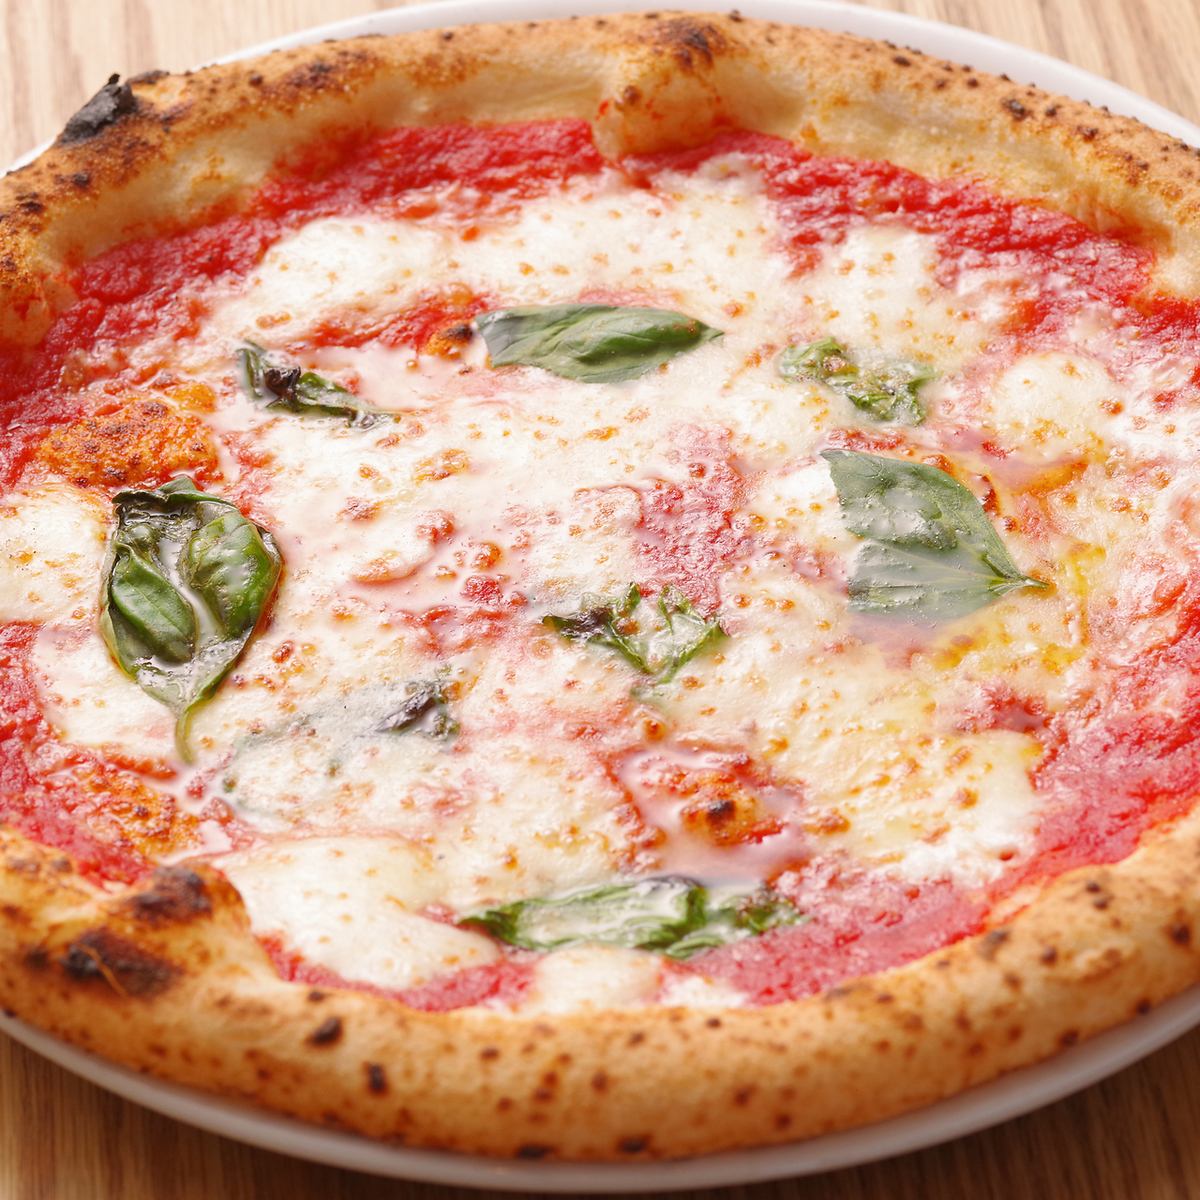 【어른의 은신처】현지 야채를 사용한 본격 가마로 만드는 수제 피자